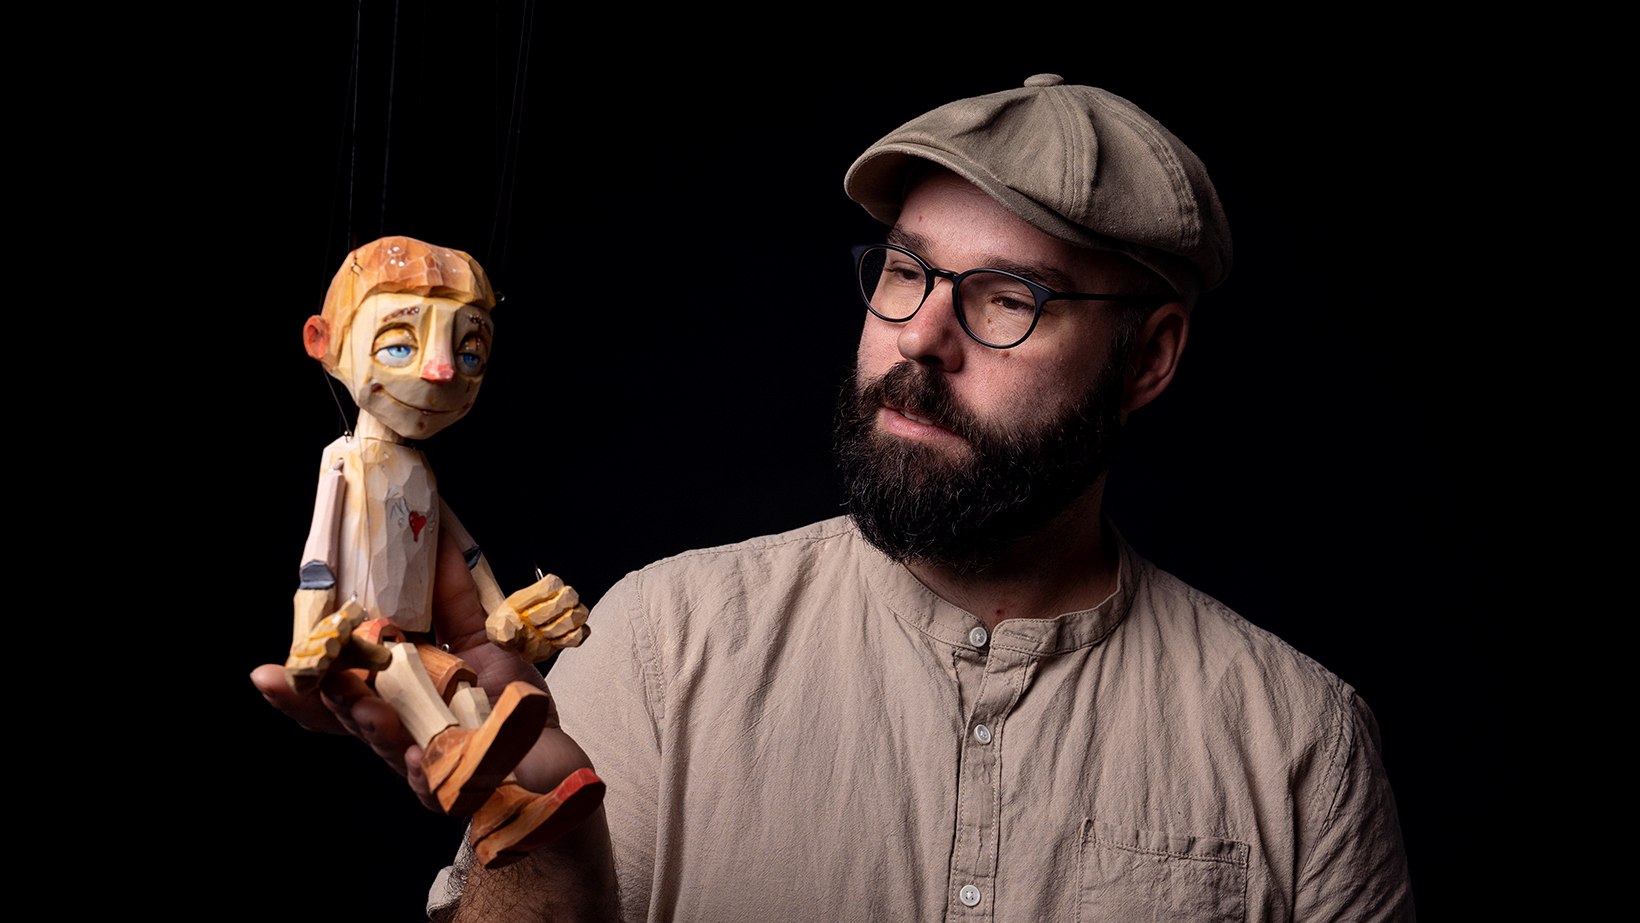 Brouwerij hoek Onrustig Online cursus - Creëer je eigen houten marionetten (Luděk Burian) |  Domestika